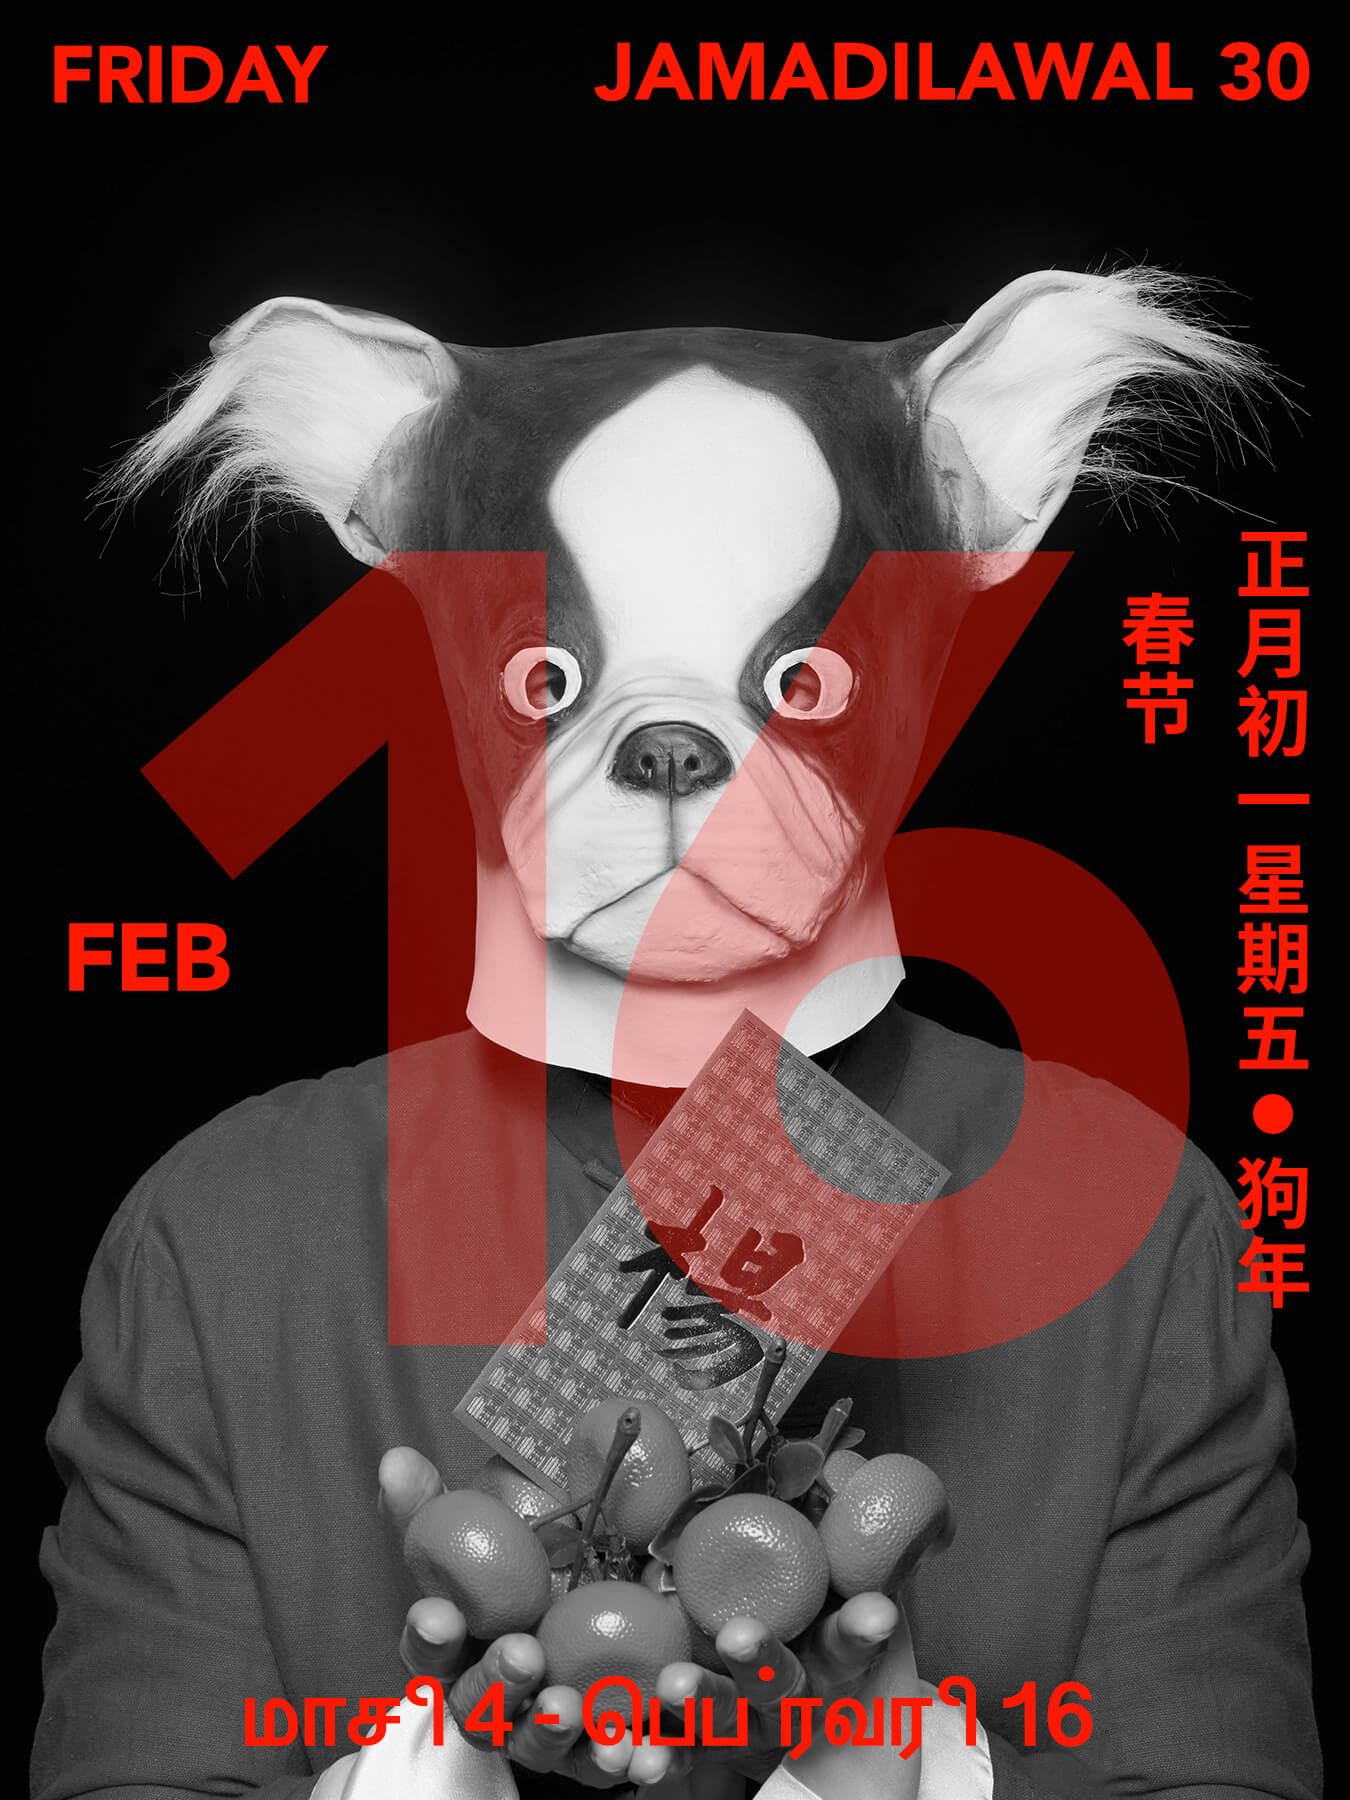 16 Feb 2018 Derong is wearing a cartoon dog head